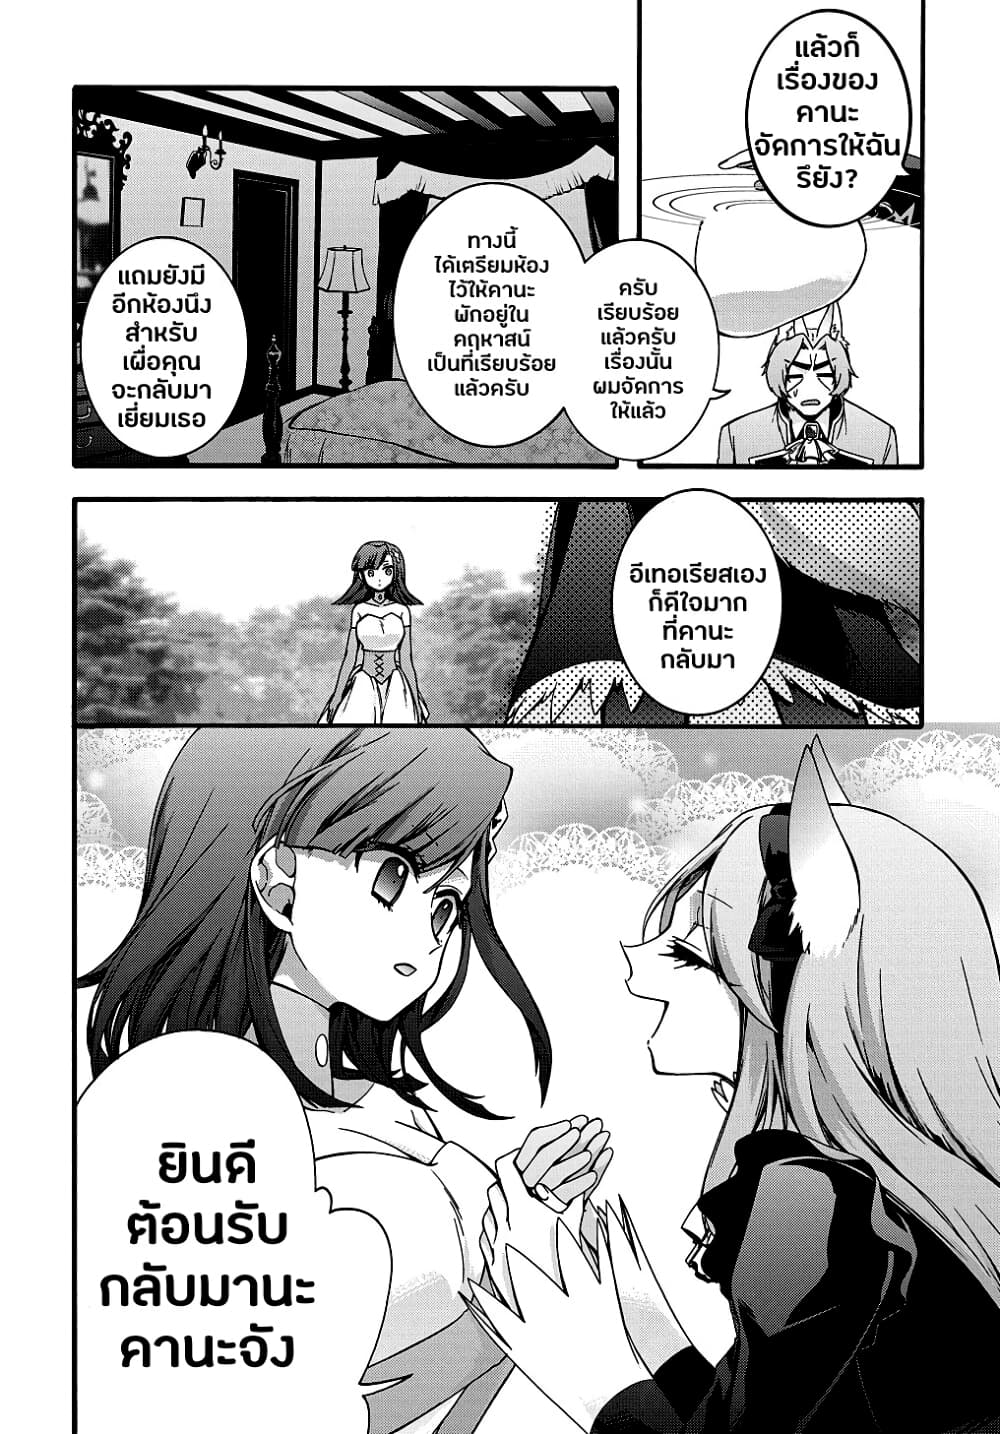 Garbage Brave: Isekai ni Shoukan Sare Suterareta Yuusha no Fukushuu Monogatari 17-17